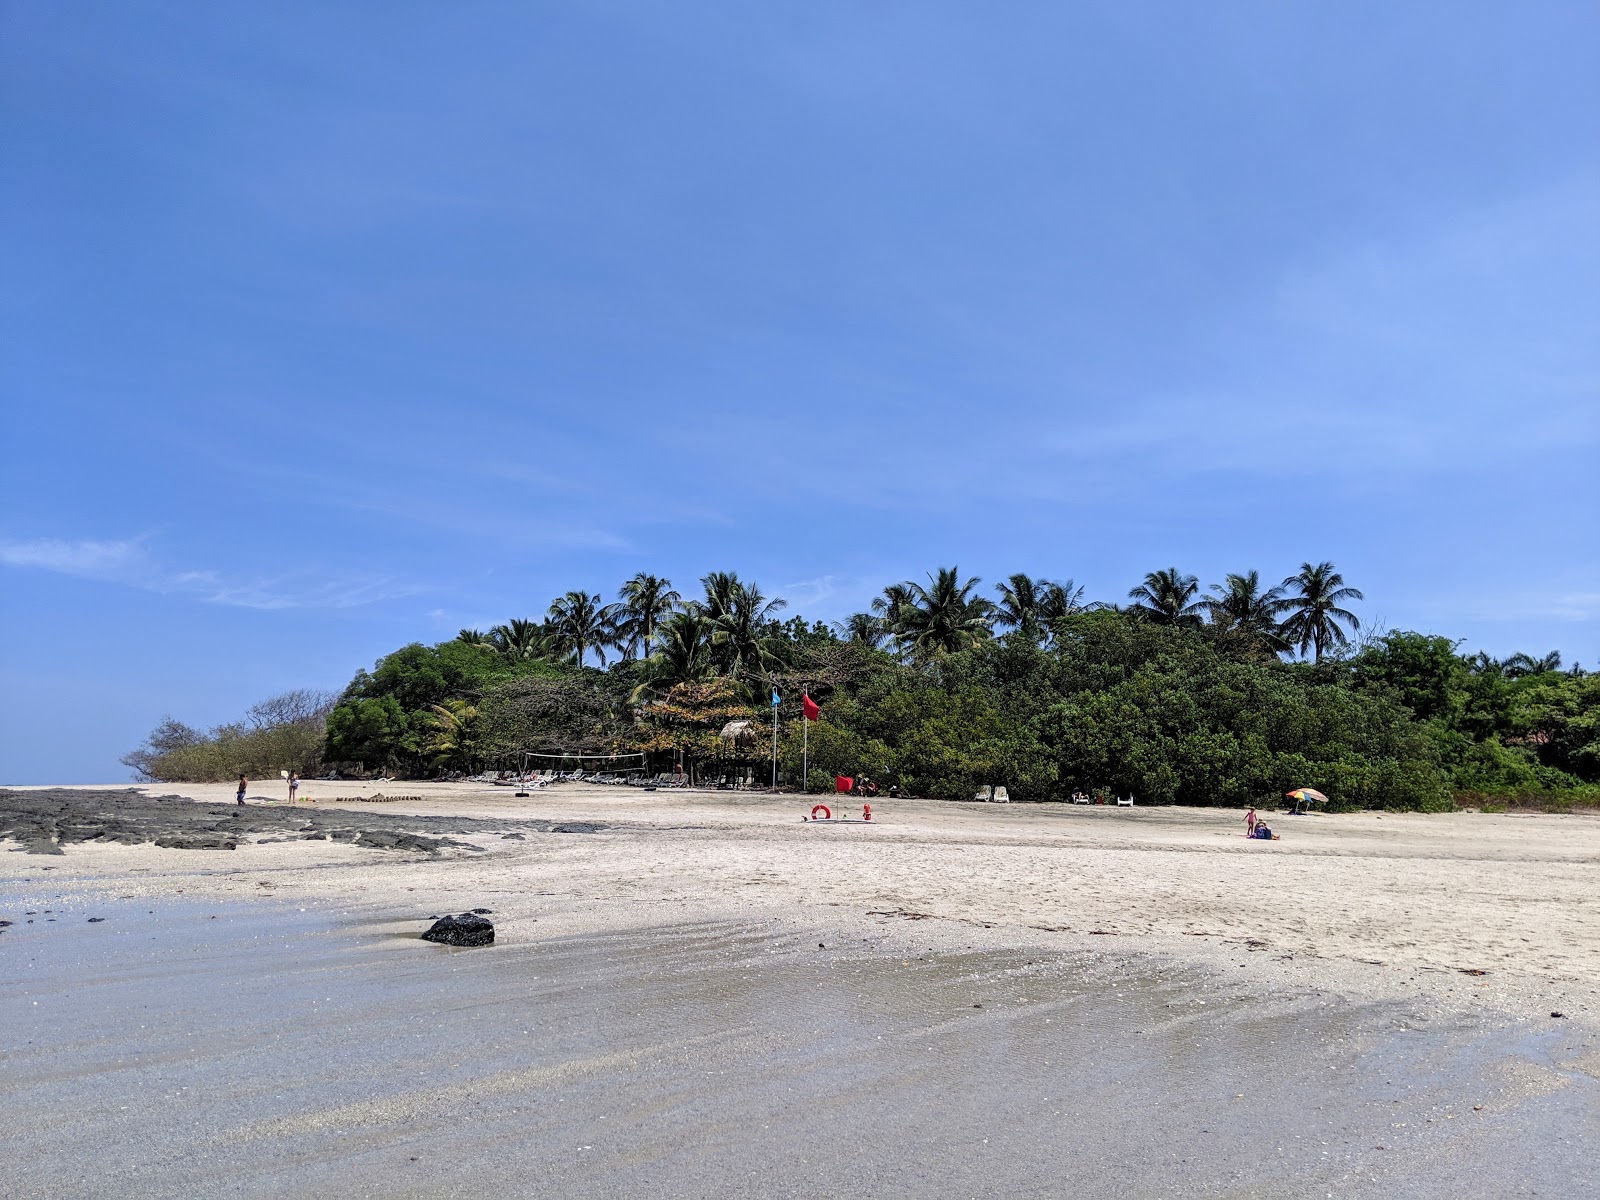 Photo de Playa Langosta - endroit populaire parmi les connaisseurs de la détente